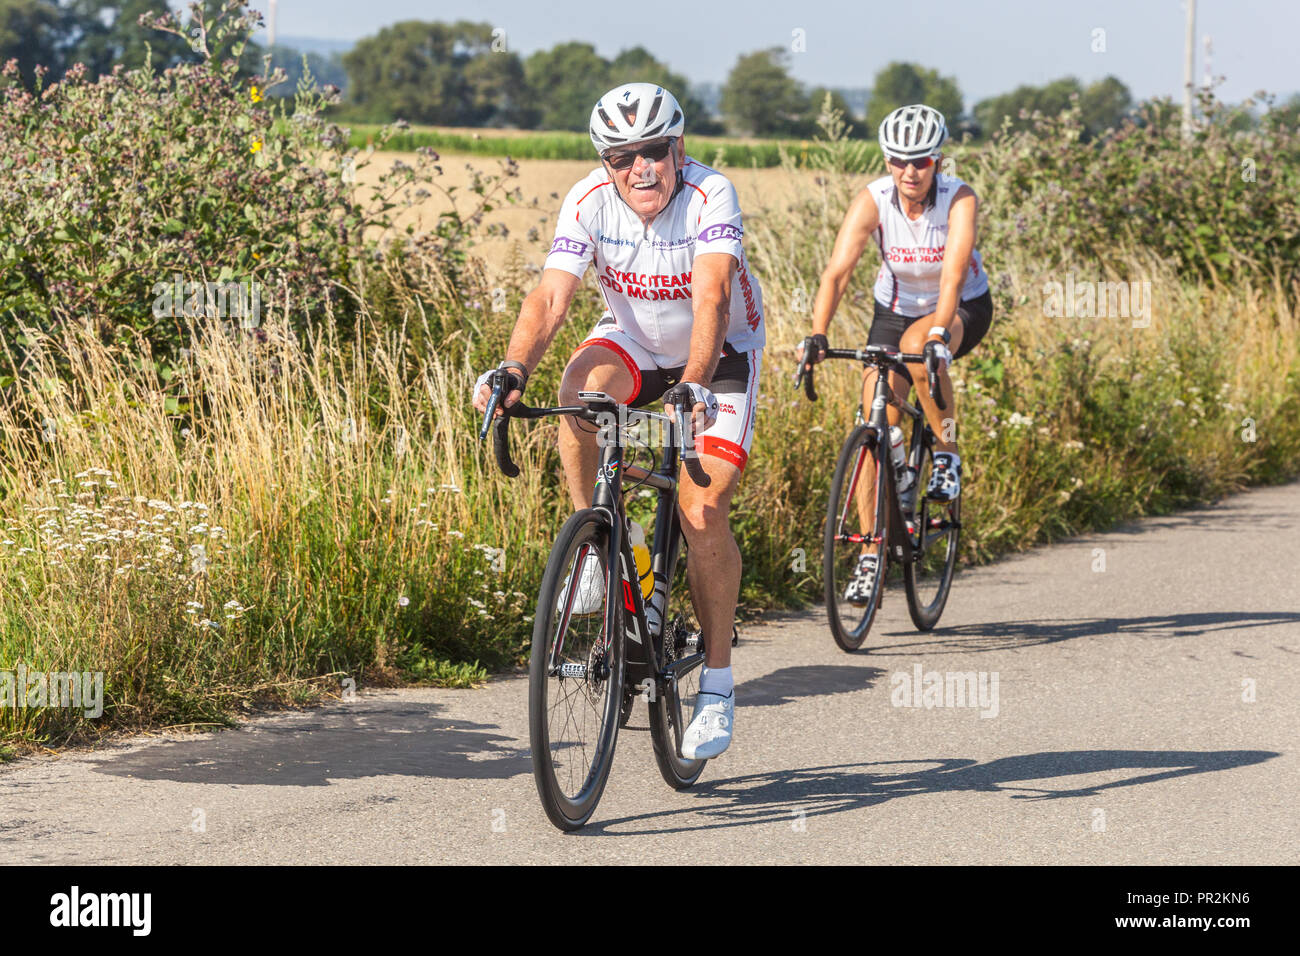 Vieillissement actif, deux personnes âgées se coupent en vélo à travers la campagne, République tchèque vie saine vélo, garder la forme physique Banque D'Images